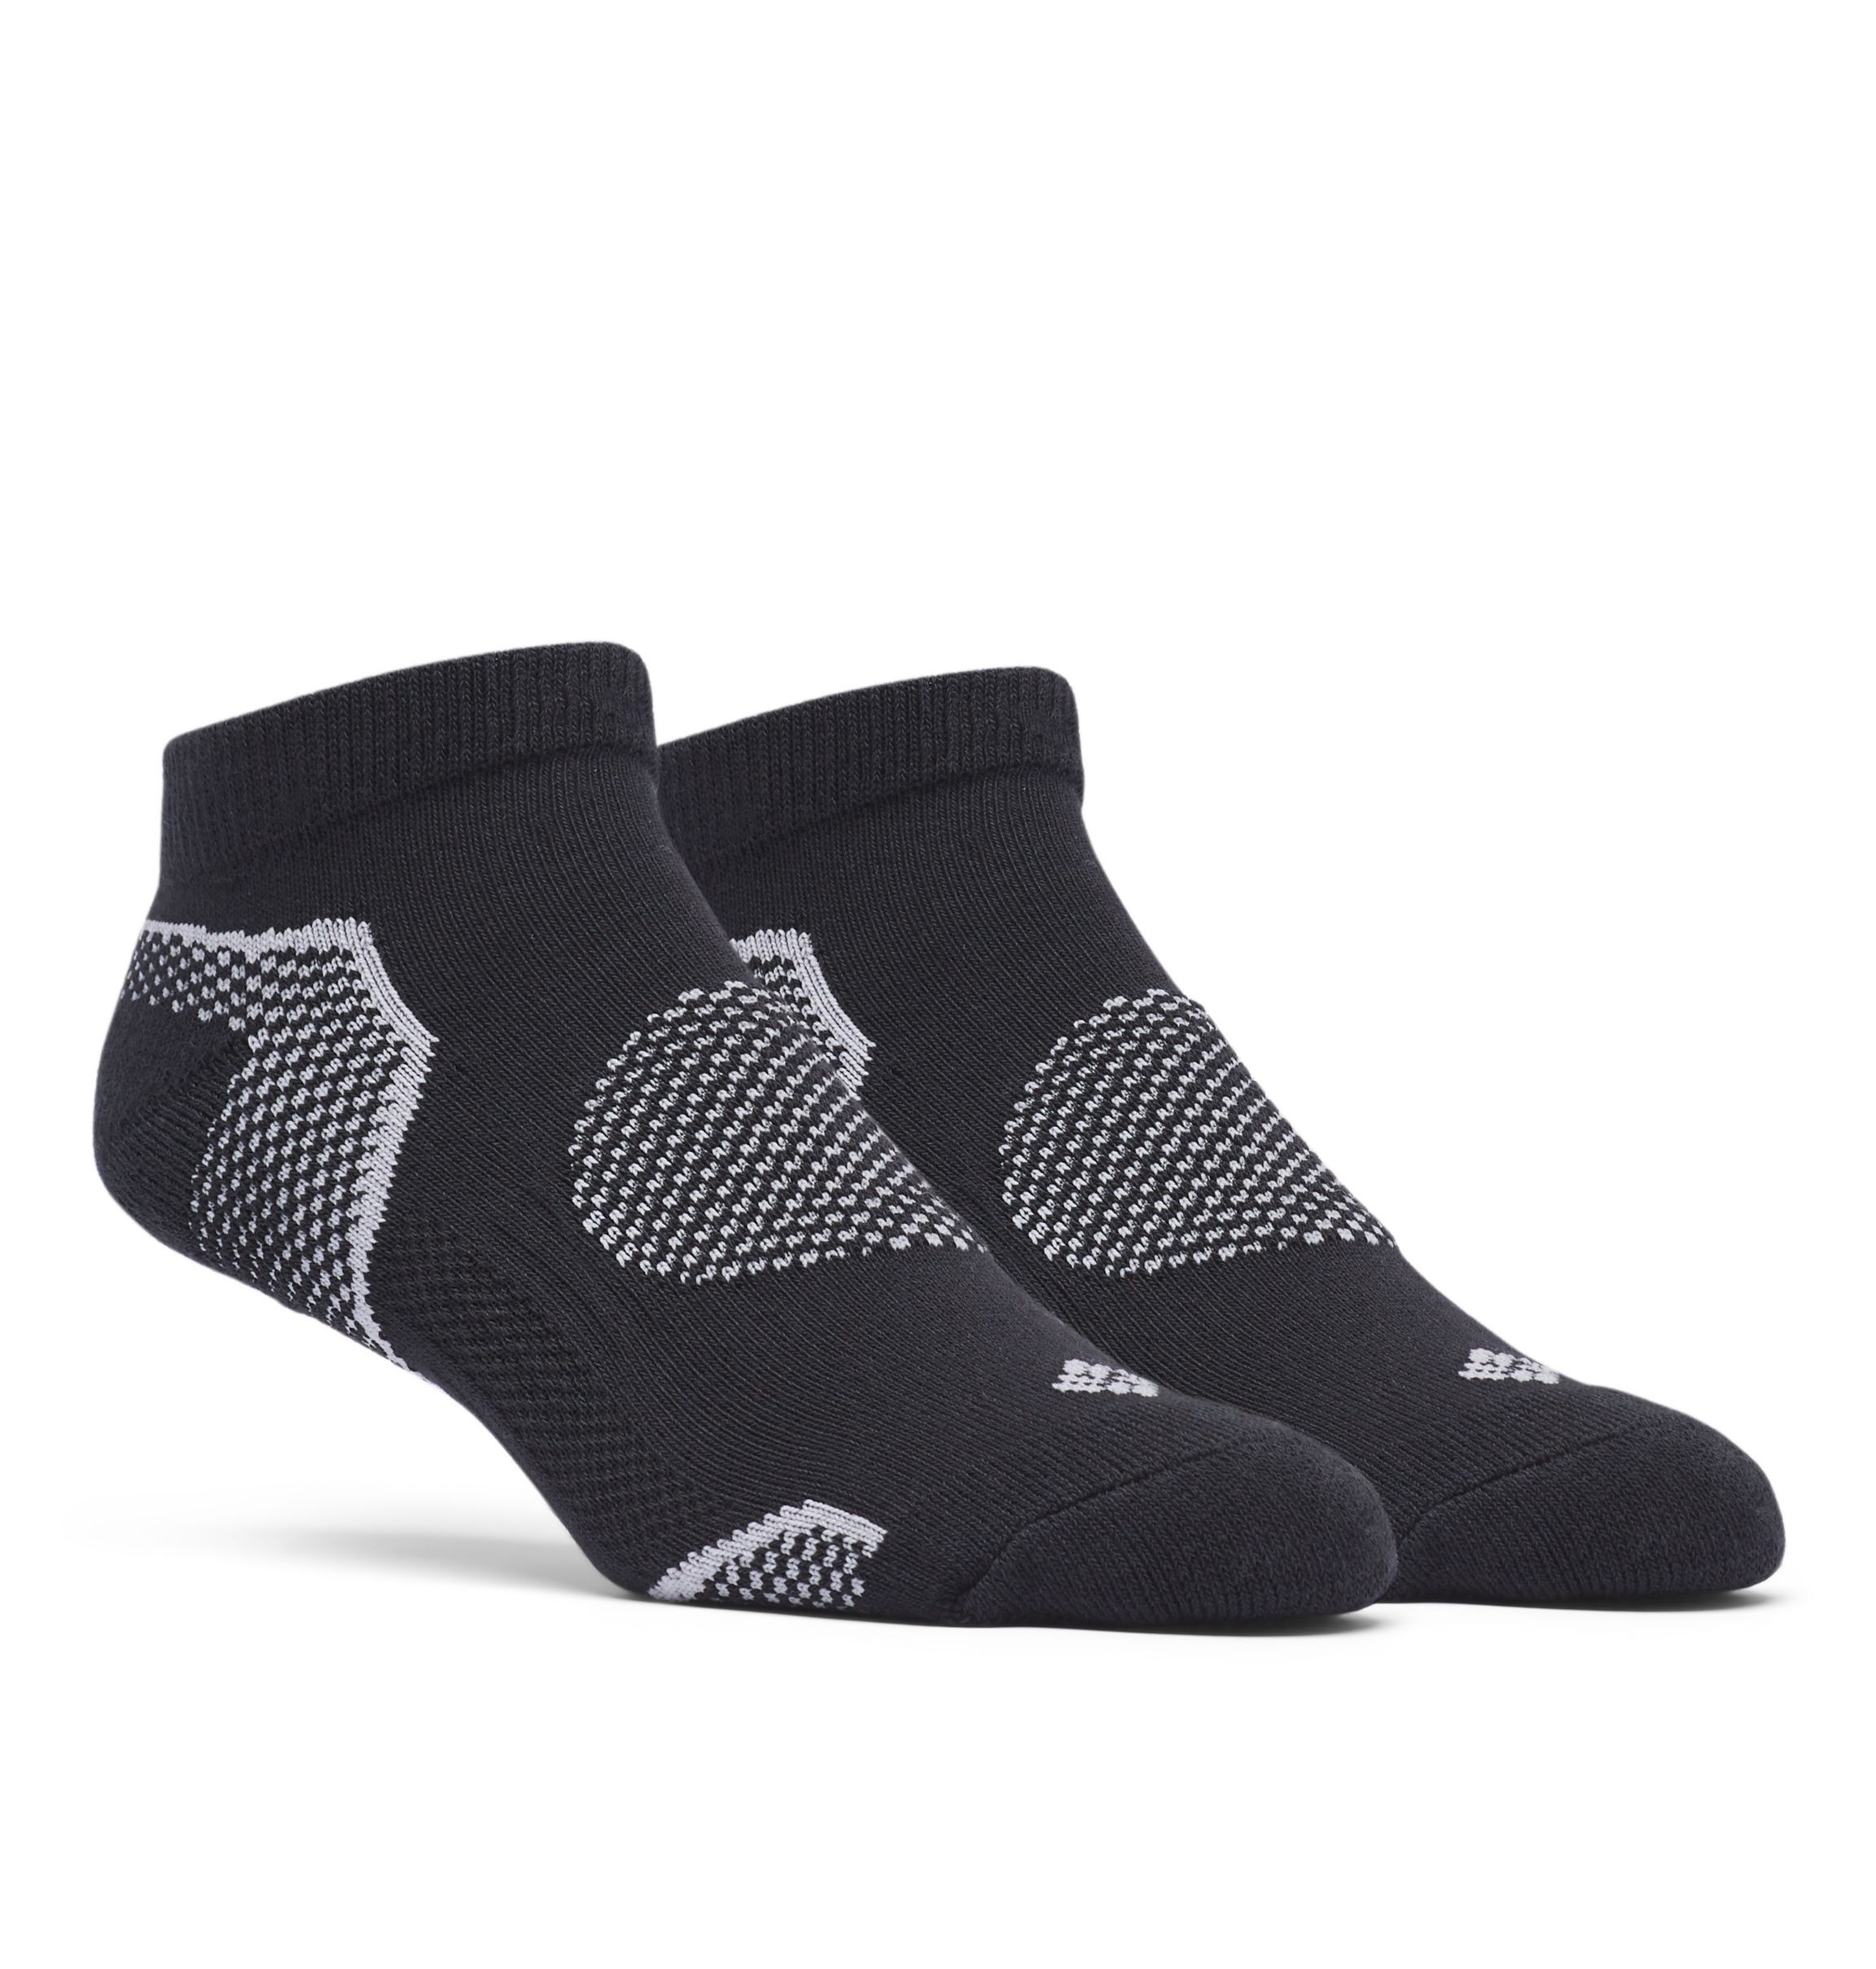 WB Socks 2 pares de calcetines de algodón gruesa de Coolmax de senderismo con amortiguación 